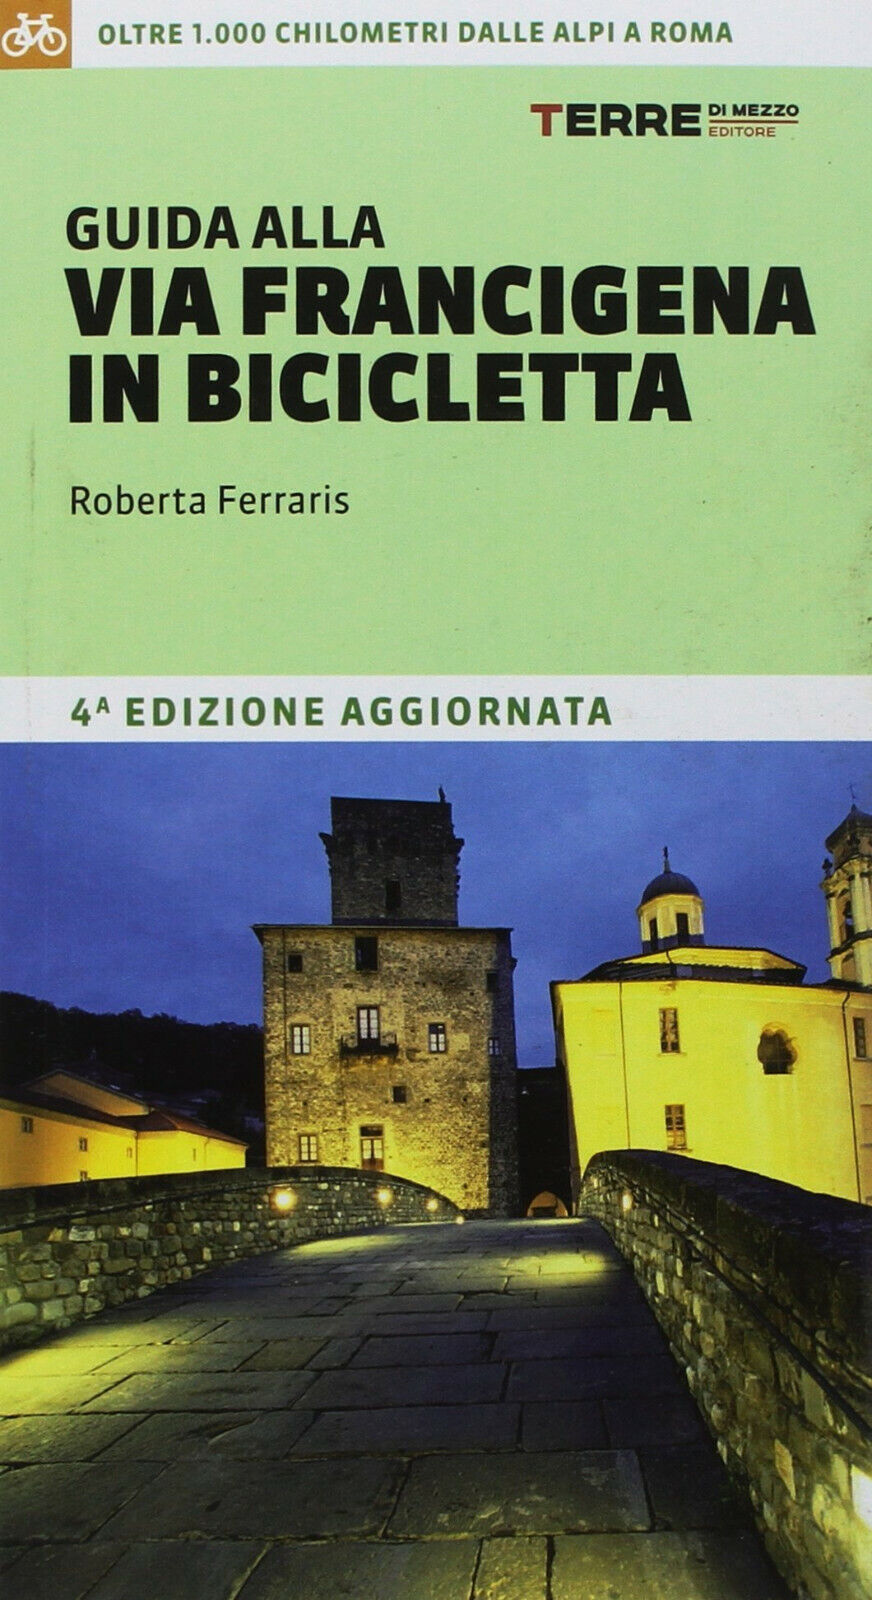 Guida alla via Francigena in bicicletta - Roberta Ferraris - Terre di Mezzo,2018